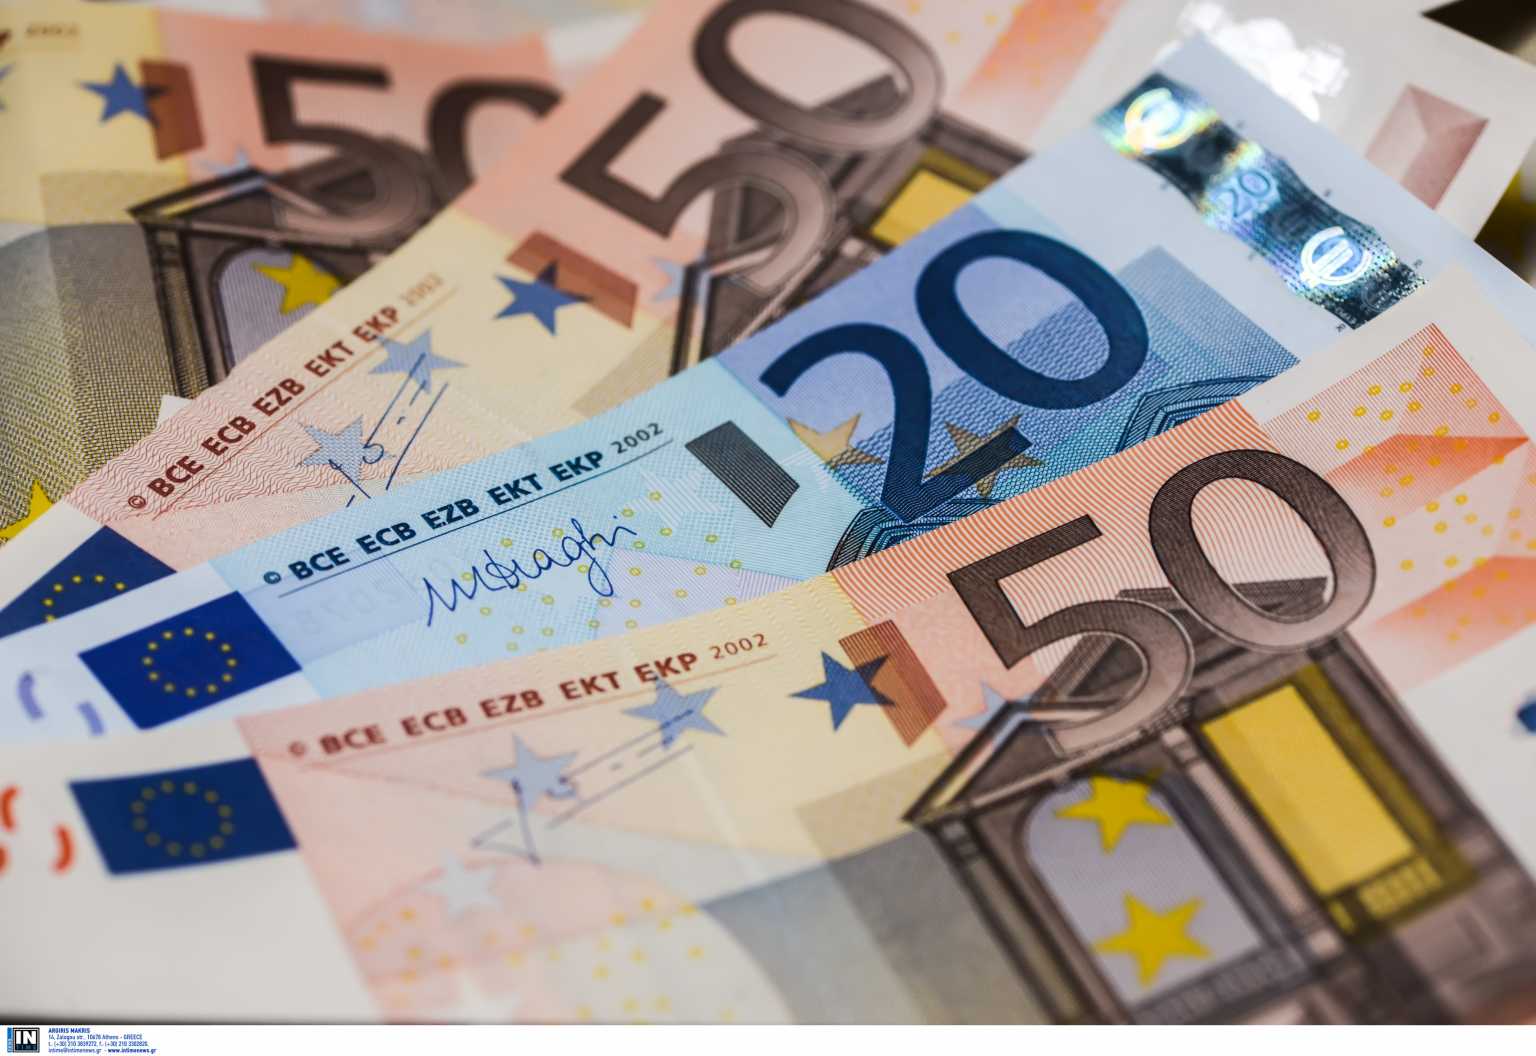 Λάρισα: Αντί να μπουν σε τραπεζικό του λογαριασμό 450 ευρώ είδε να κάνουν φτερά 6.140 που ήταν μέσα